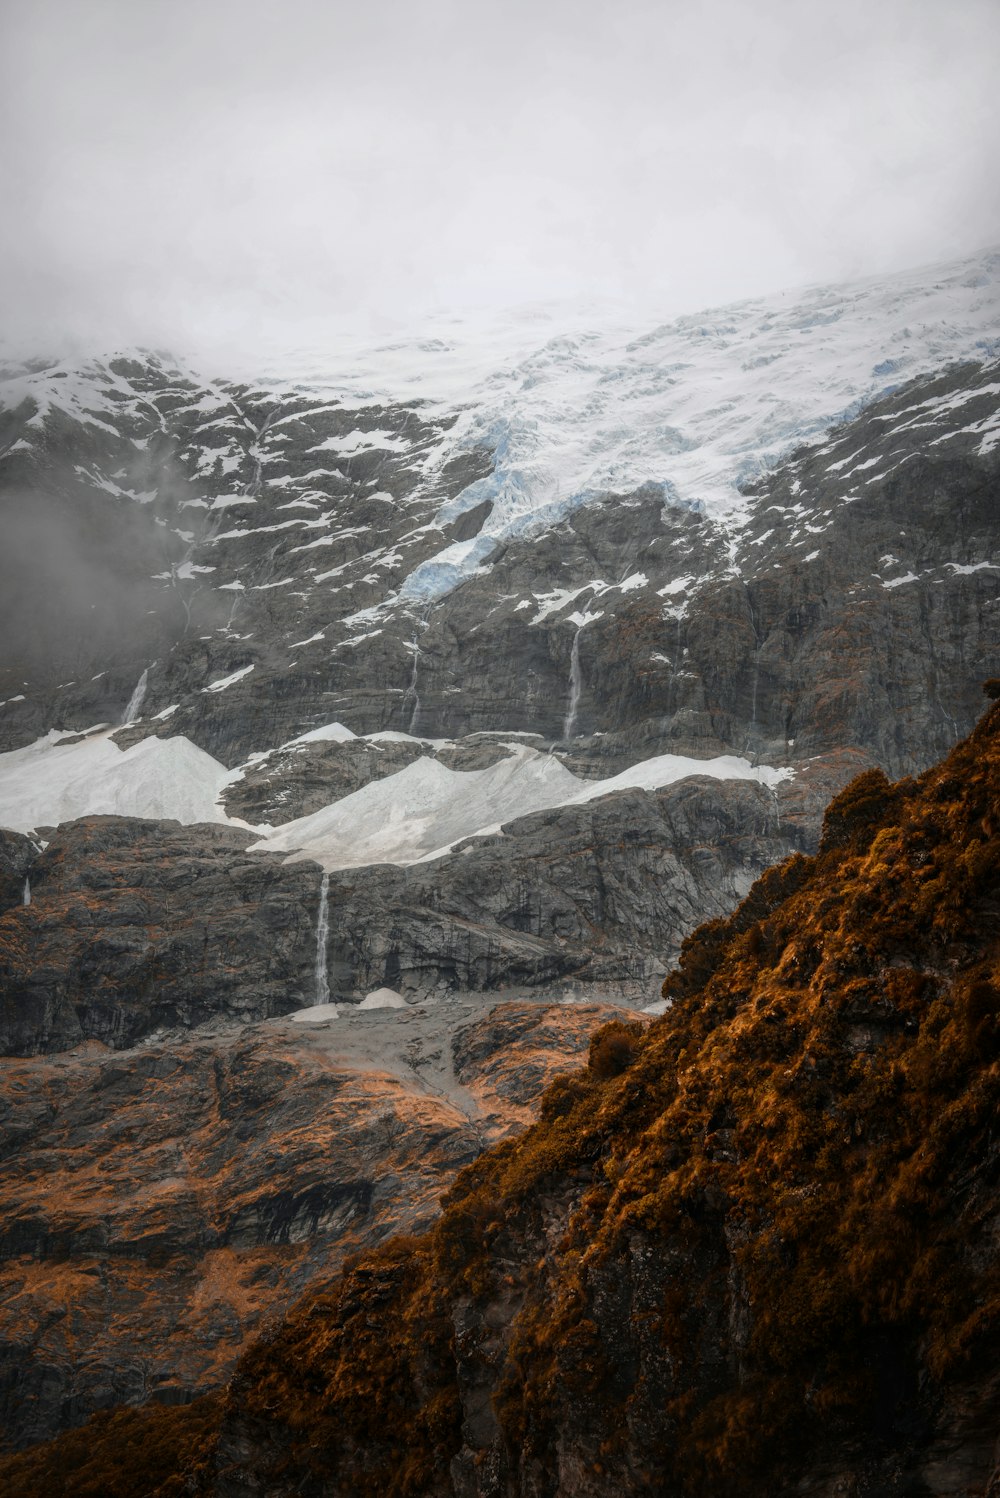 montagne enneigée dans la photographie de nature